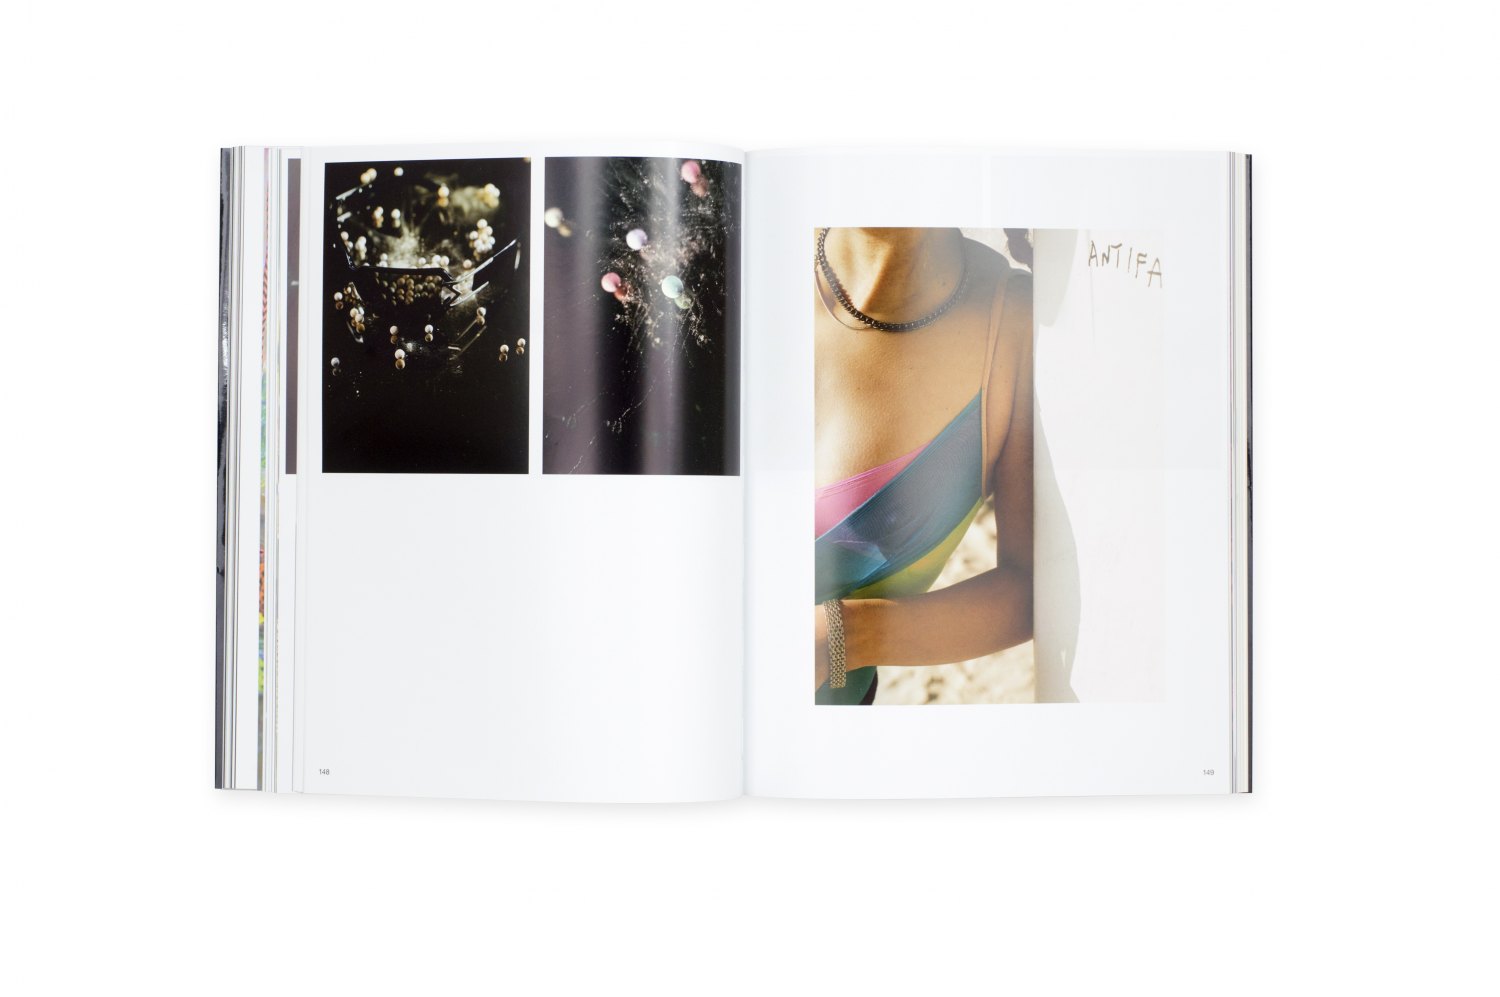 Josephine Pryde, The Enjoyment of Photography ed. by André Rottmann et al, Catalogue, Kunstverein für die Rheinlande und Westfalen, Düsseldorf/Bern 2012, 276 p.  ISBN 978-3-03764-411-9